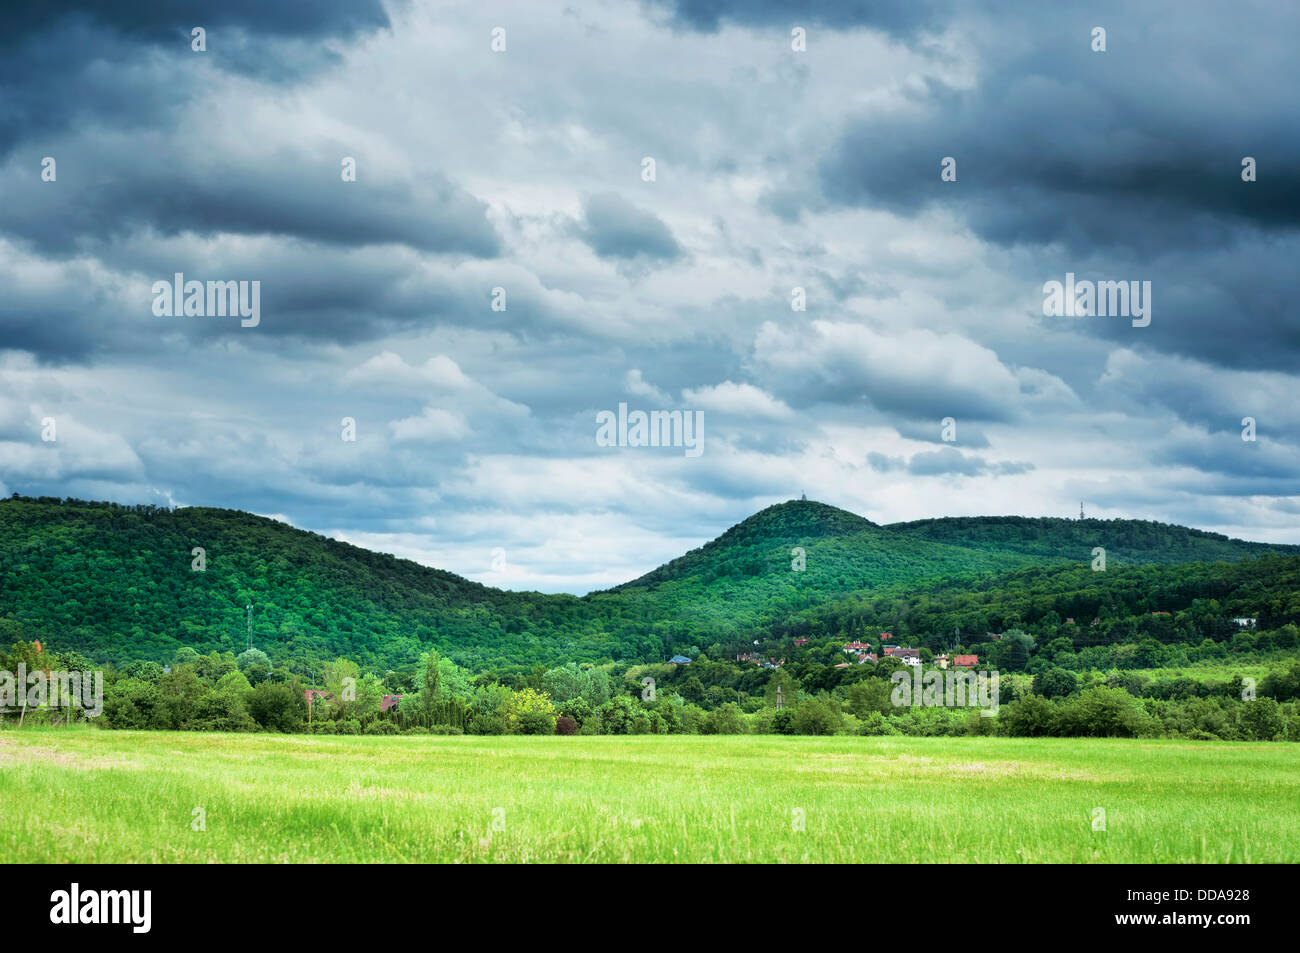 Budai hills landscape near Budapest Hungary Stock Photo - Alamy